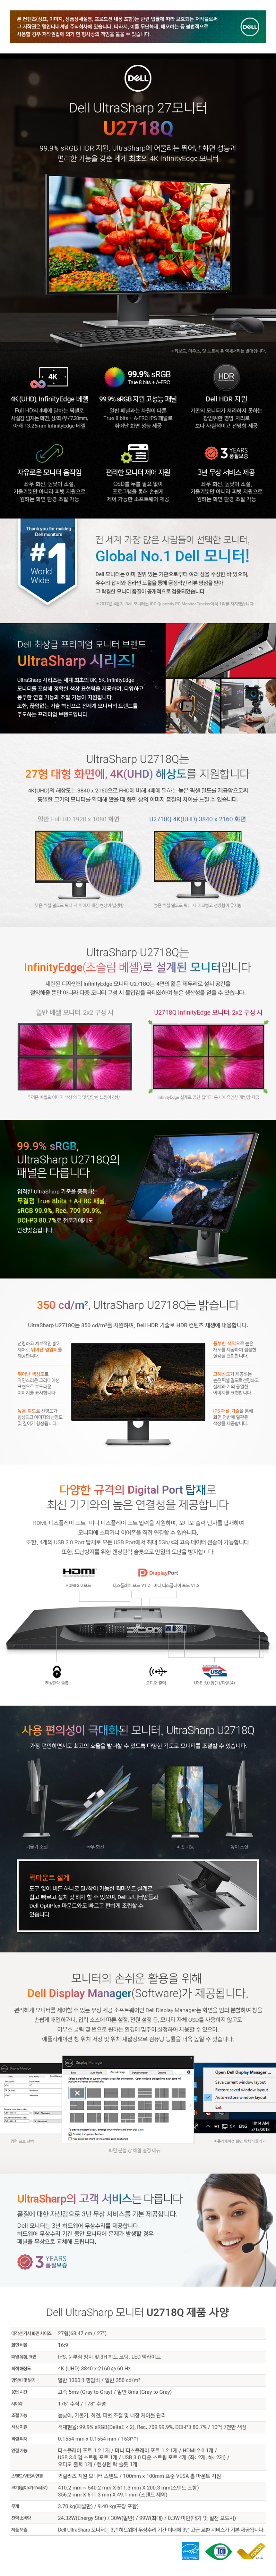 Dell UltraSharp 27 모니터. 99.9% sRGB HDR 지원&#44; UltraSharp에 어울리는 뛰어난 화면 성능과 편리한 기능을 갖춘 세계 최초의 4K InfinityEdge 모니터. 4K(UHD)&#44; InfinityEdge 배열. Full HD의 4배에 달하는 픽셀로 사실감 넘치는 화면&#44; 상/좌/우/7.28mm&#44; 아래 13.26mm InfinityEdge 배젤. 99.9% sRGB 지원 고성능 패널. 일반 패널과는 차원이 다른 True 8 bits + A-FRC IPS 패널로 뒤어난 화면 성능 제공. Dell HDR 지원. 기존의 모니터가 처리하지 못하는 광범위한 명암 처리로 보다 사실적이고 선명함 제공. 자유로운 모니터 움직임. 좌우 회전&#44; 높낮이 조절&#44; 기울기뿐만 아니라 피벗 지원으로 원하는 화면 환경 조절 가능. 편리한 모니터 제어 지원. OSD를 누를 필요 없이 프로그램을 통해 손쉽게 제어 가능한 소프트웨어 제공. 3년 무상 서비스 제공. 3년 품질보증. 다양한 규격의 Digital Port 탑재로 최신 기기와의 높은 연결성을 제공합니다. HDMI&#44; 디스플레이 포트 (V1.2)&#44; 미니 디스플레이 포트 (V1.2) 입력을 지원하며&#44; 오디오 출력 단자를 탑재하여 모니터에 스피커나 이어폰을 직접 연결할 수 있습니다. 또한&#44; 4개의 USB 3.0 Port 탑재로 모든 USB Port 에서 최대 5Gb/s의 고속 데이터 전송이 가능합닏나. 또한&#44; 도난방지를 위한 켄싱턴락 슬롯으로 만일의 도난을 방지합니다. 퀵마운트 설계 : 도구 없이 버튼 하나로 탈/착이 가능한 퀵마운트 설계로 쉽고 빠르고 설치 및 해체 할 수 있으며&#44; Dell 모니터암들과 Dell OptiPlex 마운트와도 빠르고 편하게 조립할 수 있습니다.